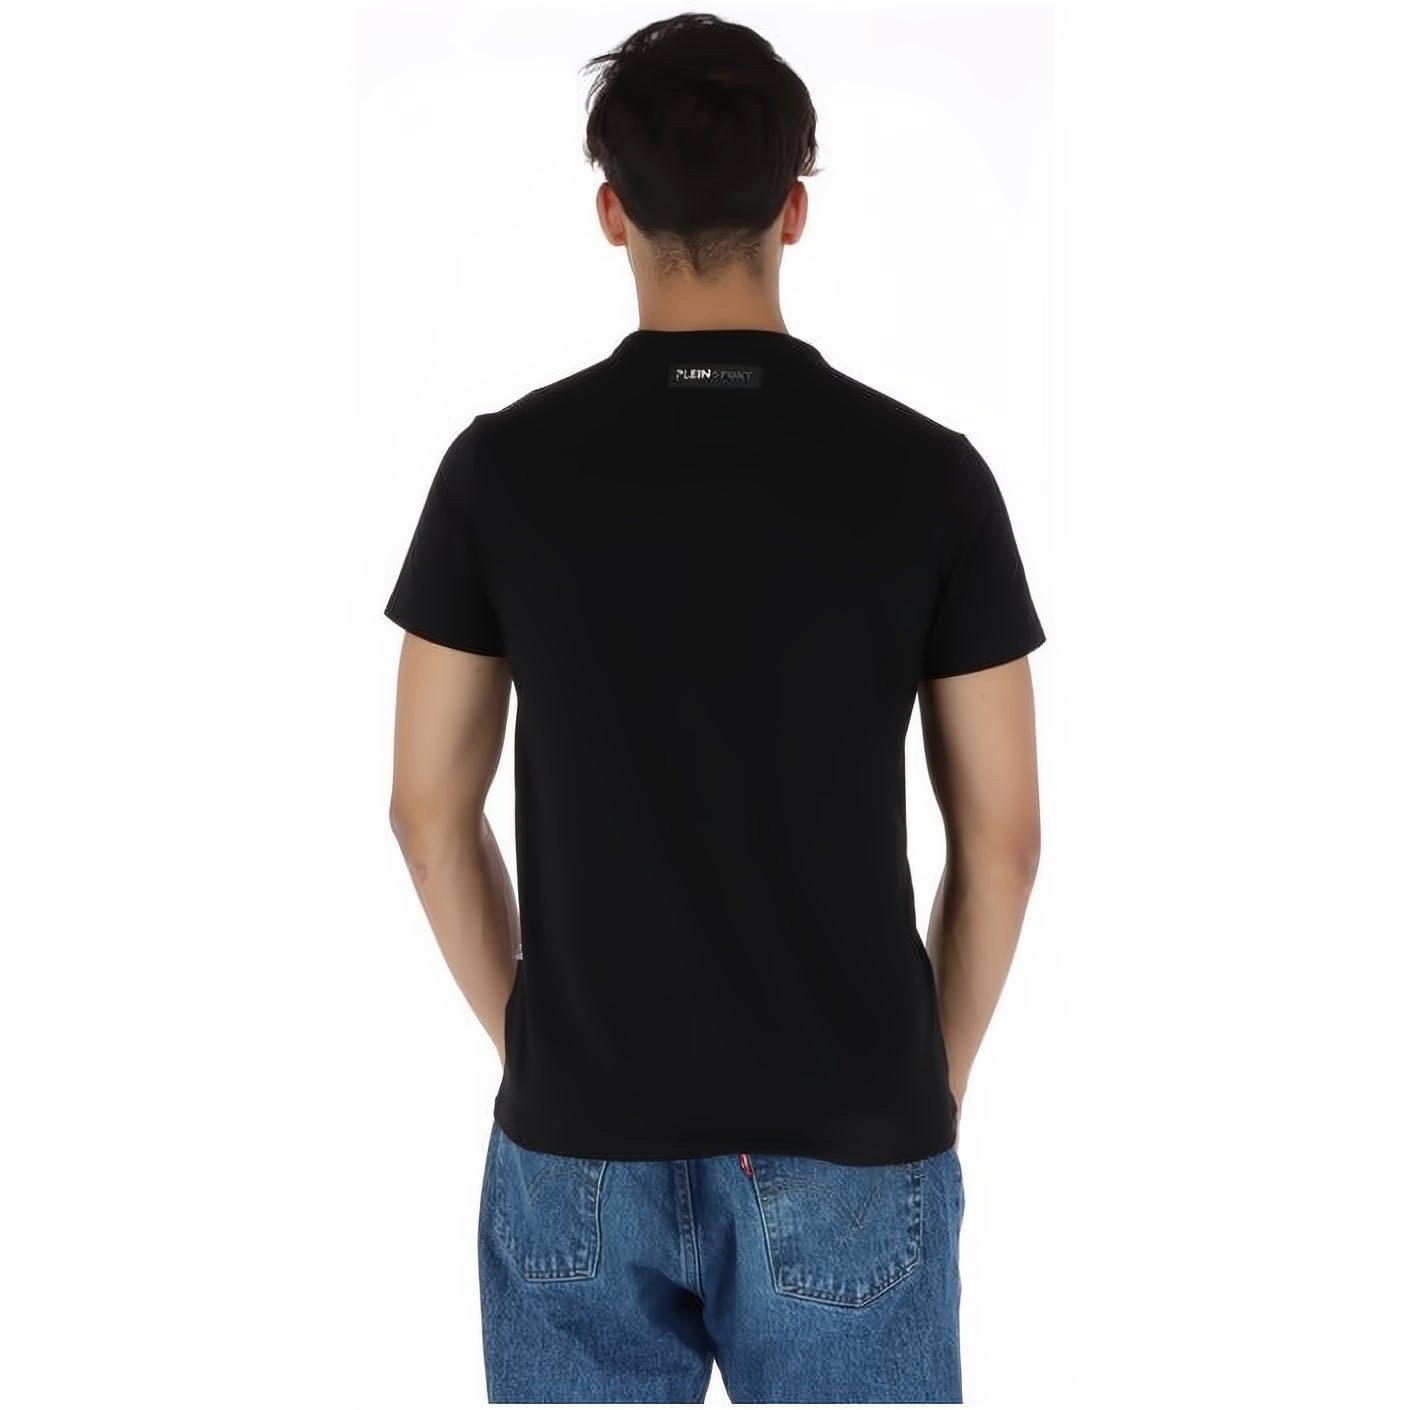 NECK Stylischer T-Shirt Farbauswahl Tragekomfort, Look, hoher vielfältige ROUND SPORT PLEIN